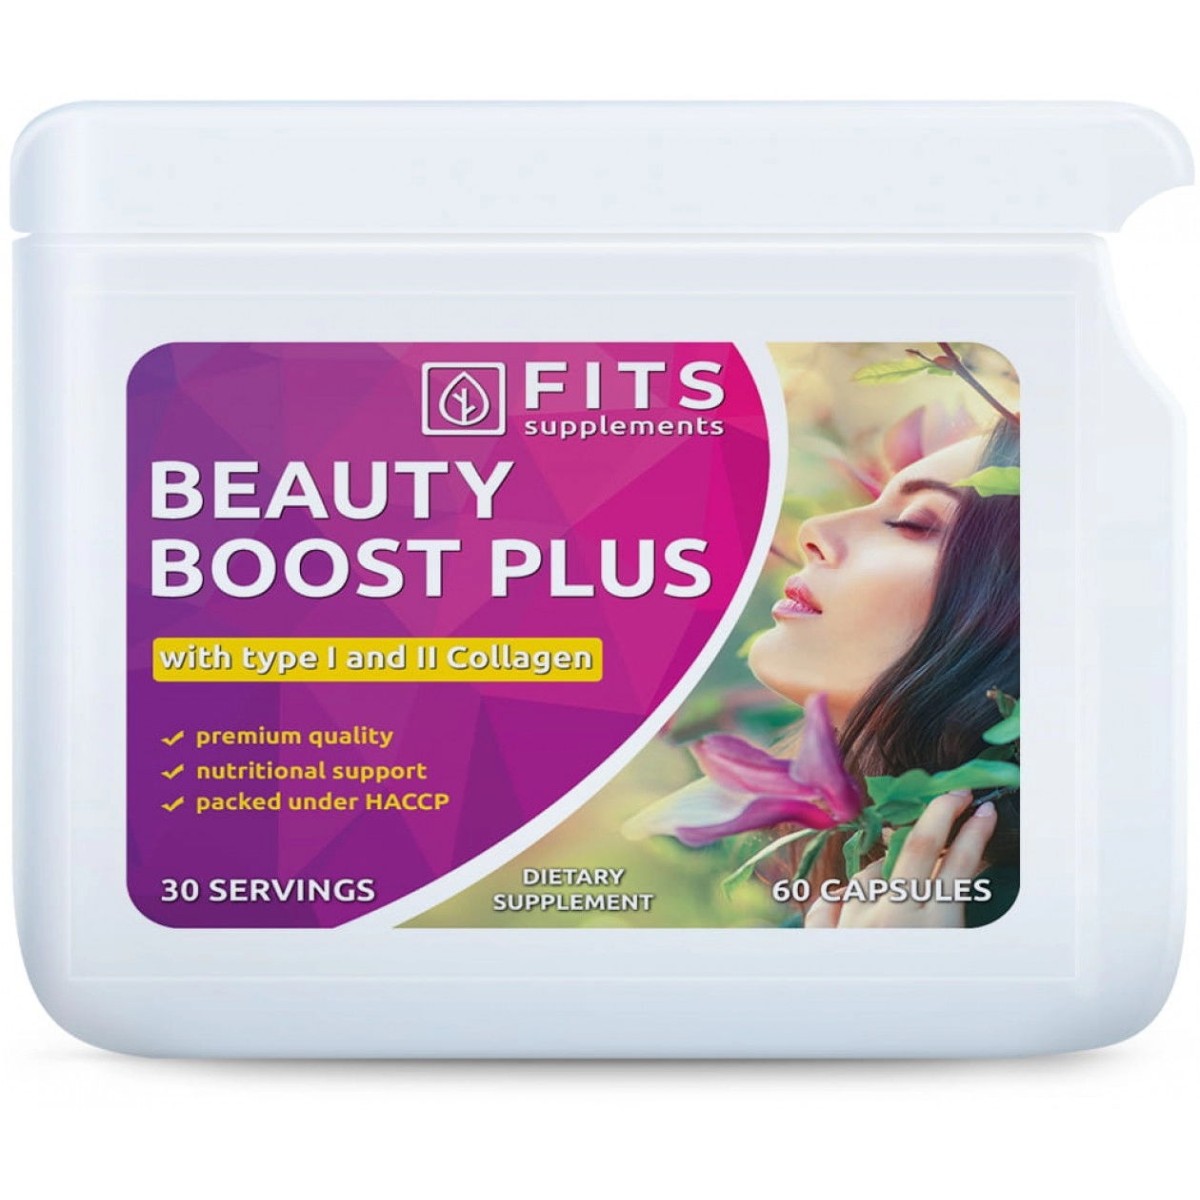 Nutricosmética - Suplementos al mejor precio: Beauty Boost Plus Complex, Vitaminas con Colágeno tipo I y II de FITS Supplements en Skin Thinks - Tratamiento Anti-Edad